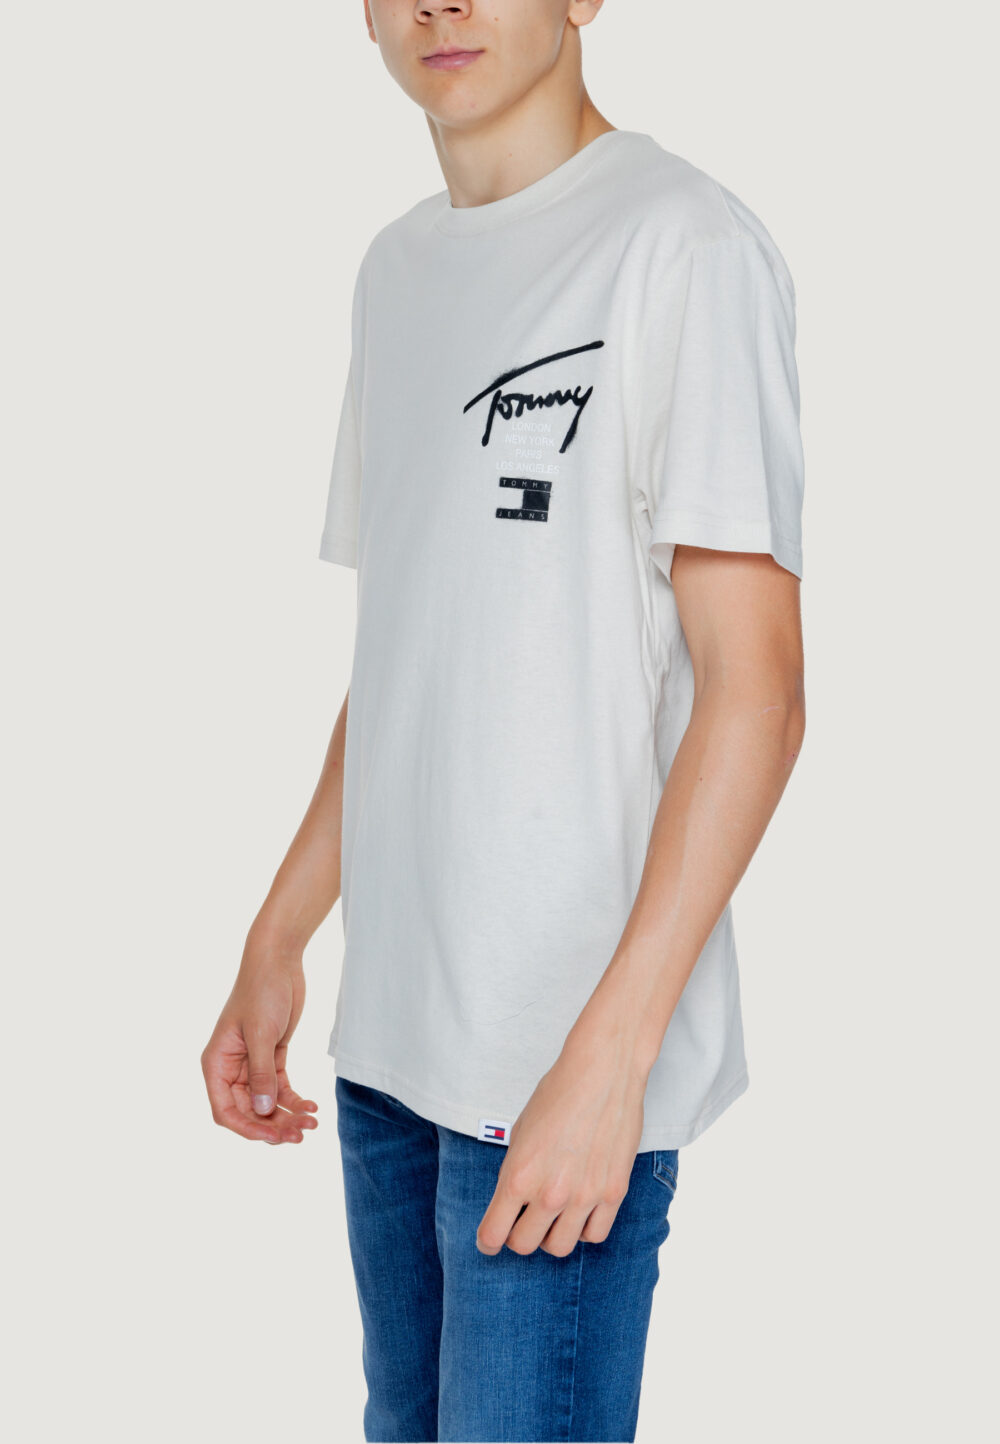 T-shirt Tommy Hilfiger Jeans TJM REG GRAFFITI SIG Beige chiaro - Foto 5